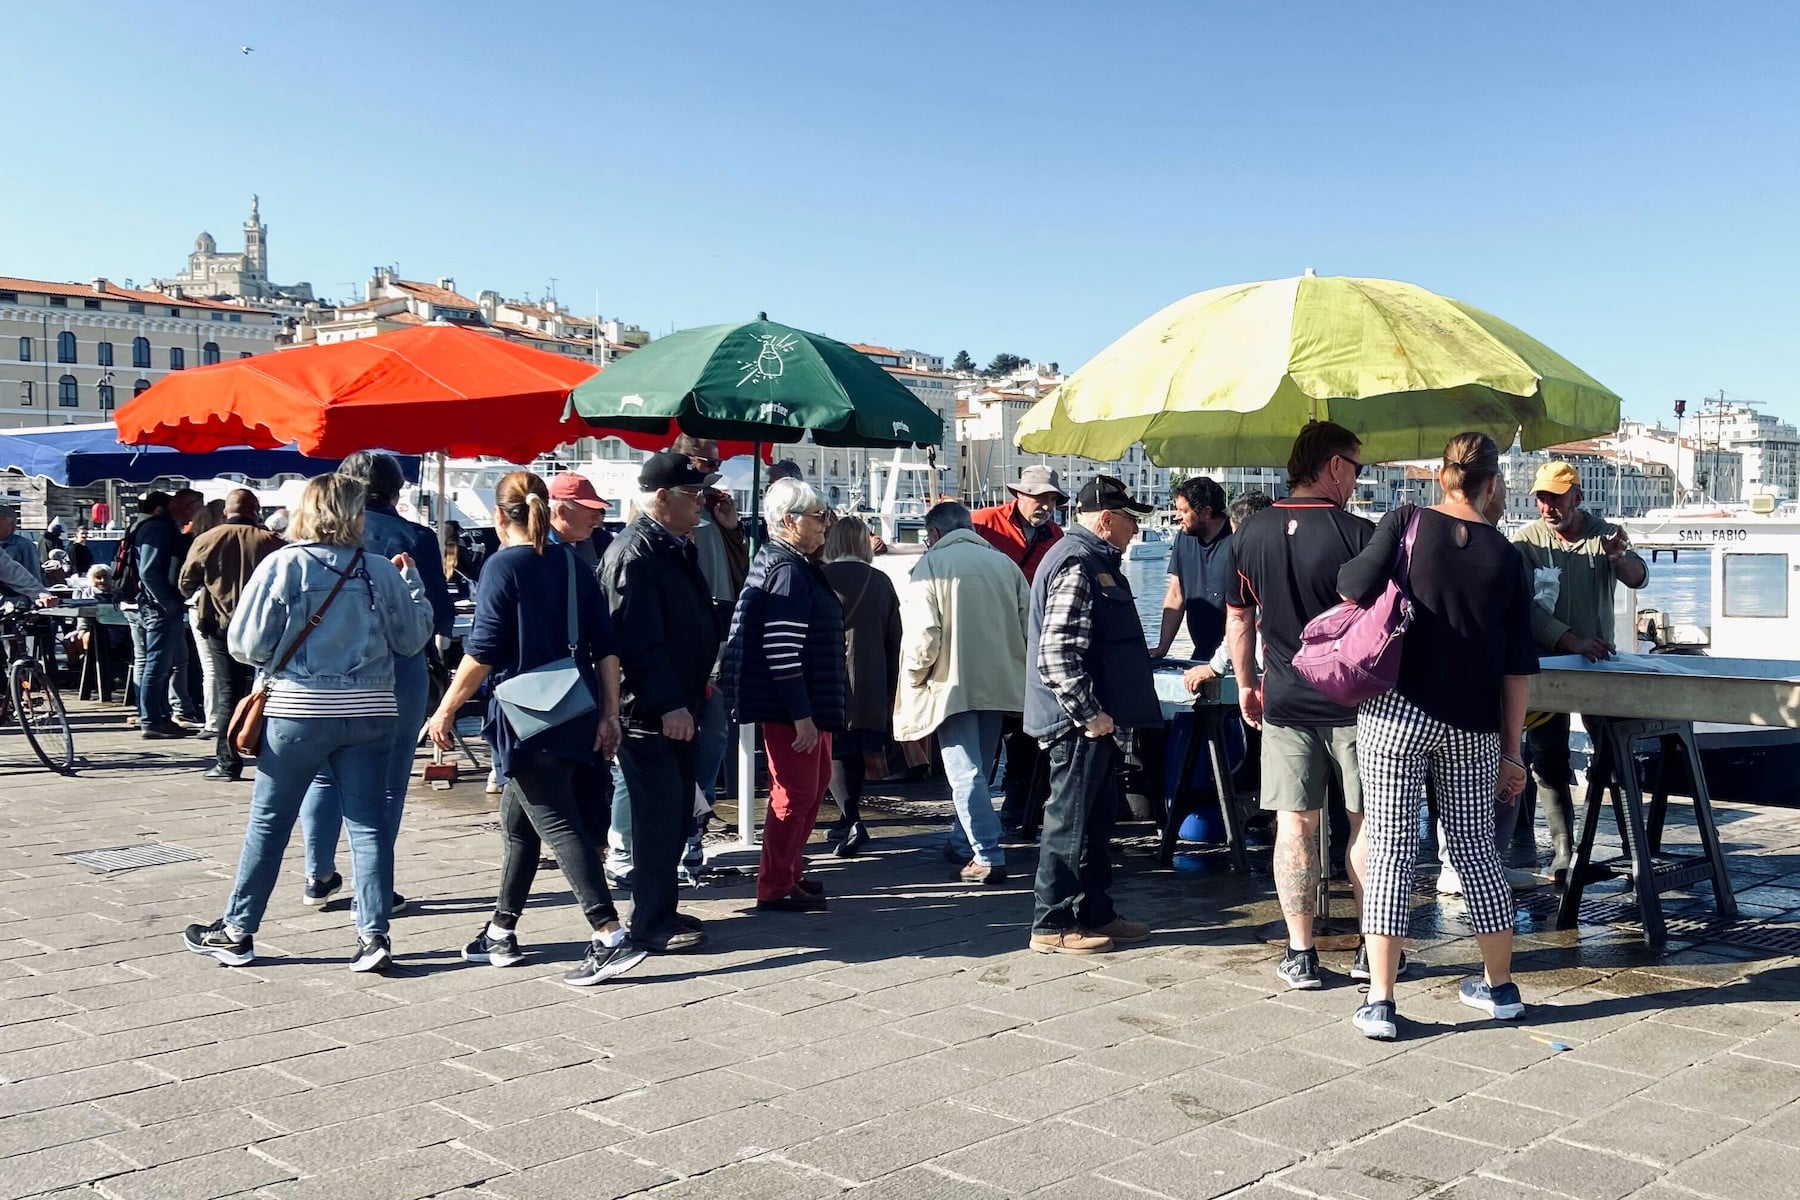 marché alimentaire du vieux-port, Le nouveau marché alimentaire du Vieux-Port pourrait débuter le 29 octobre, Made in Marseille